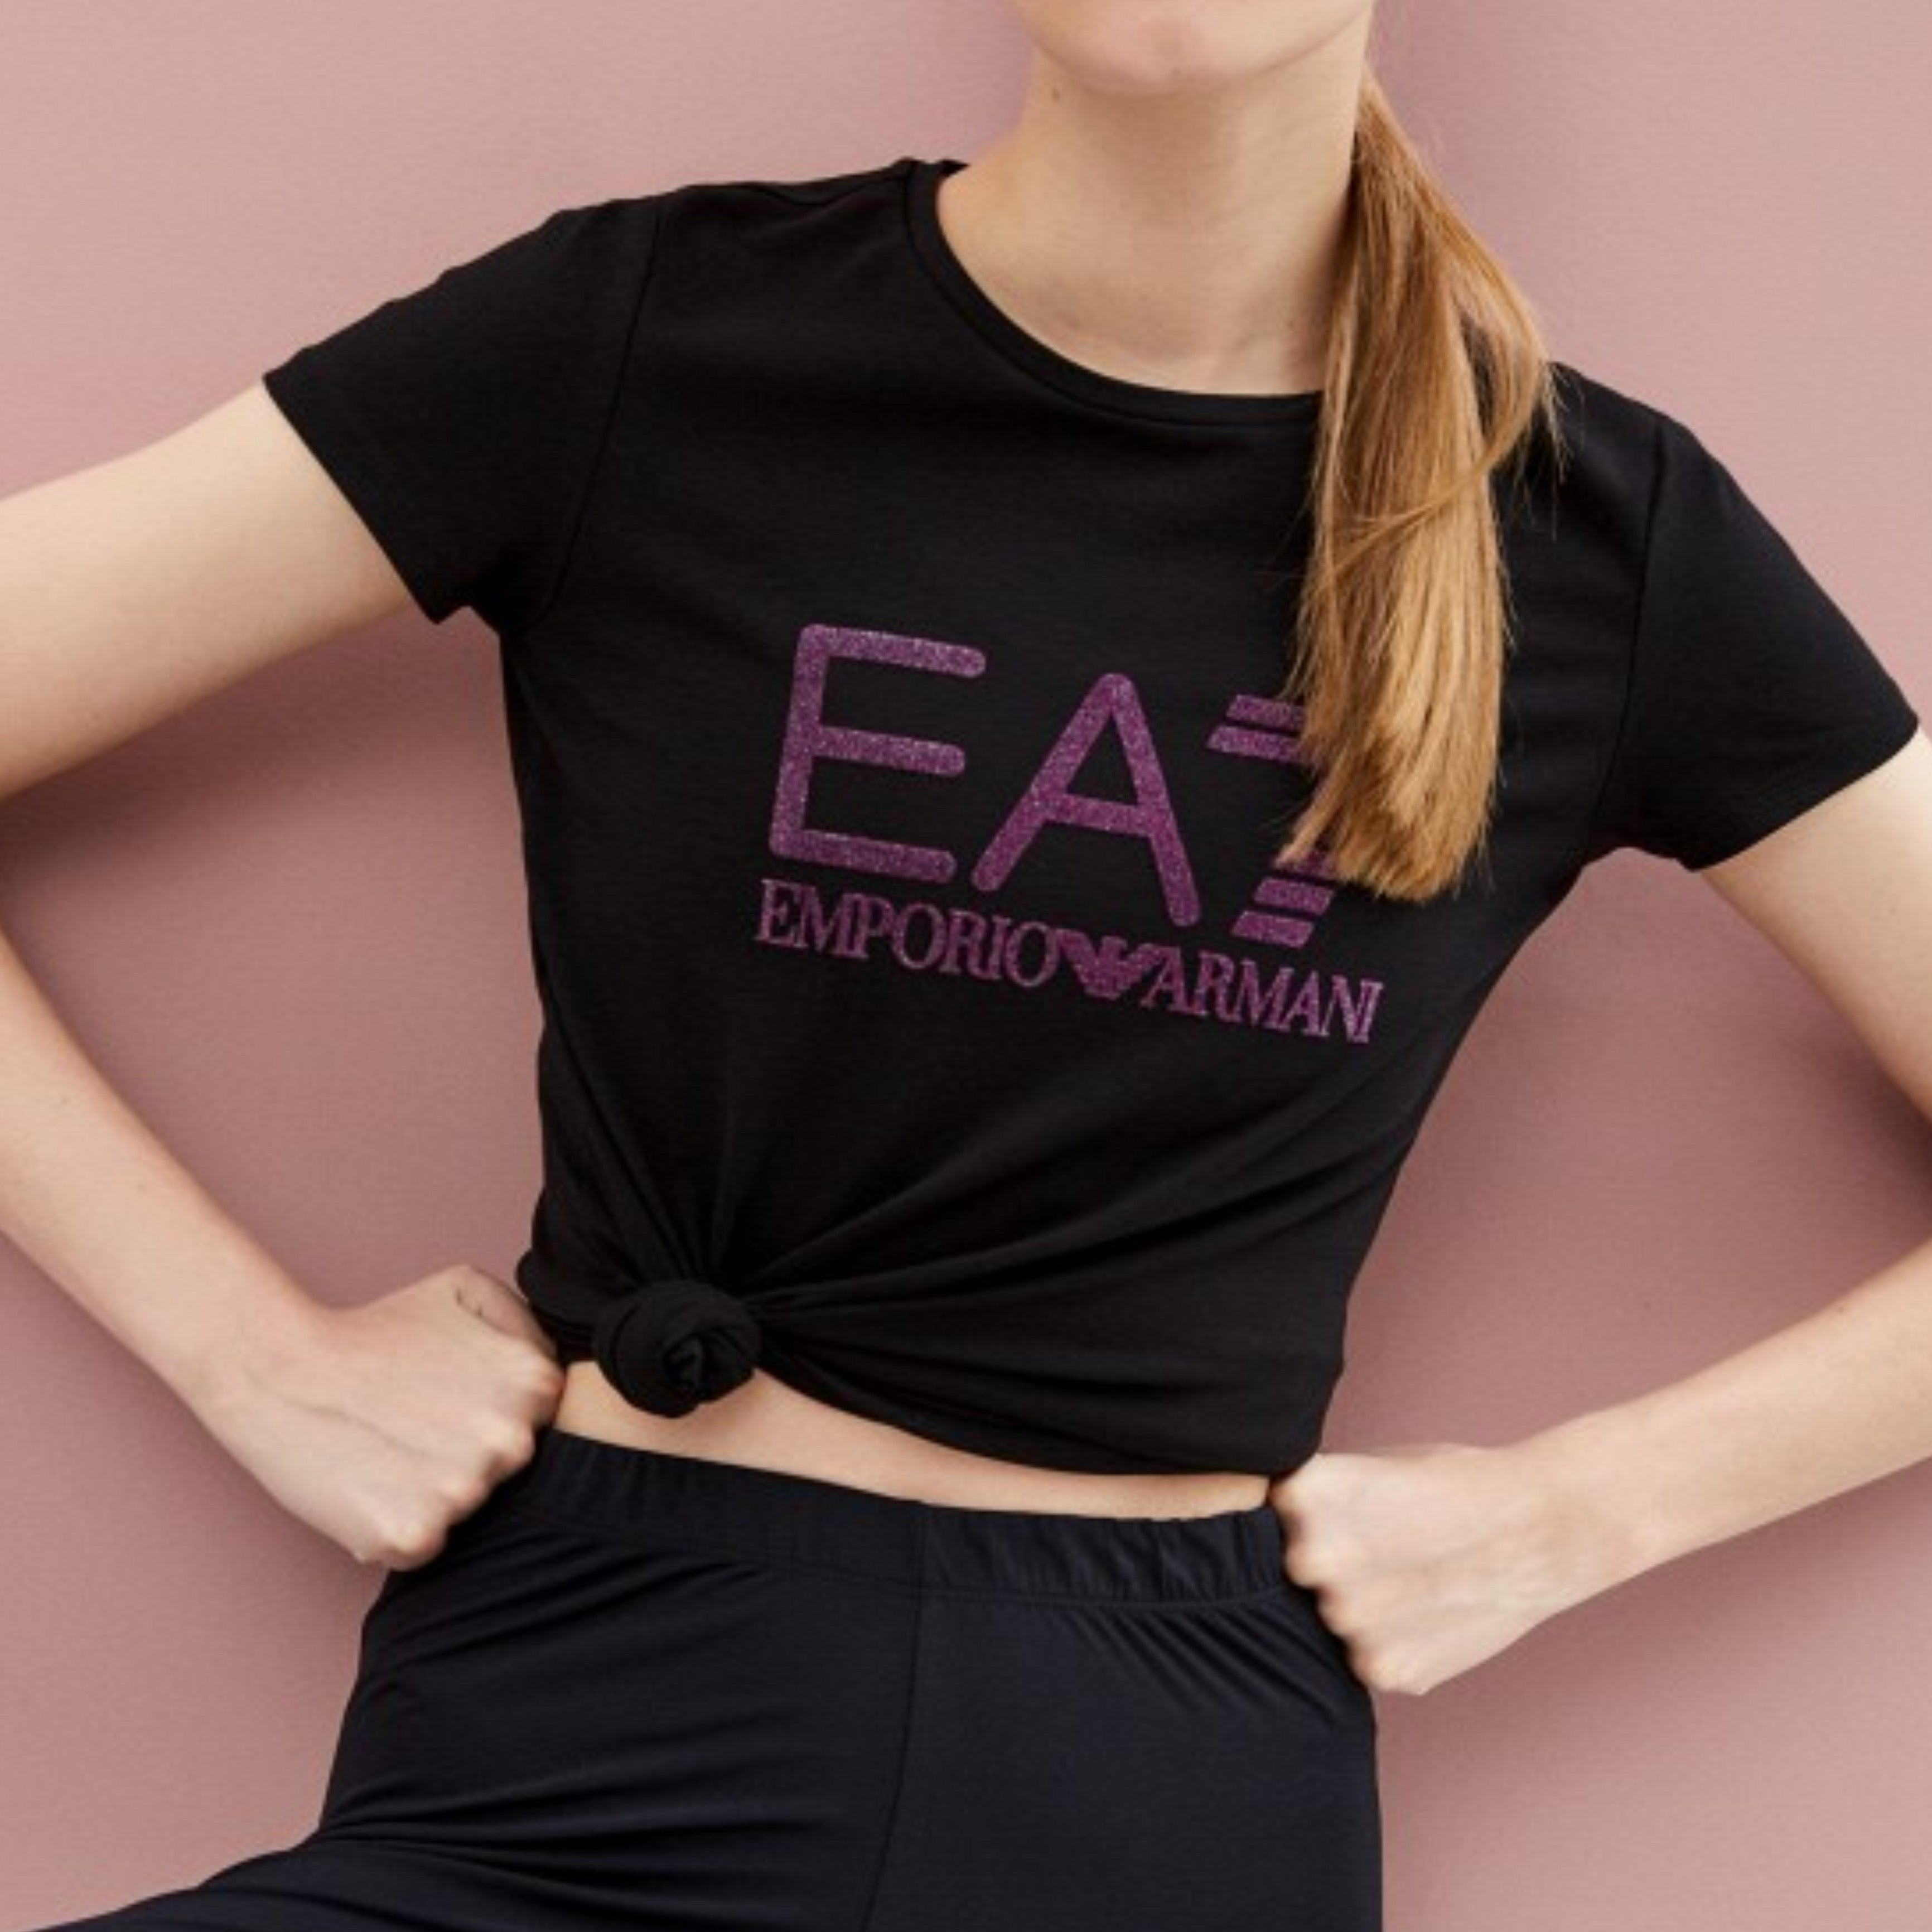 EA7 Emporio Armani дамска тениска